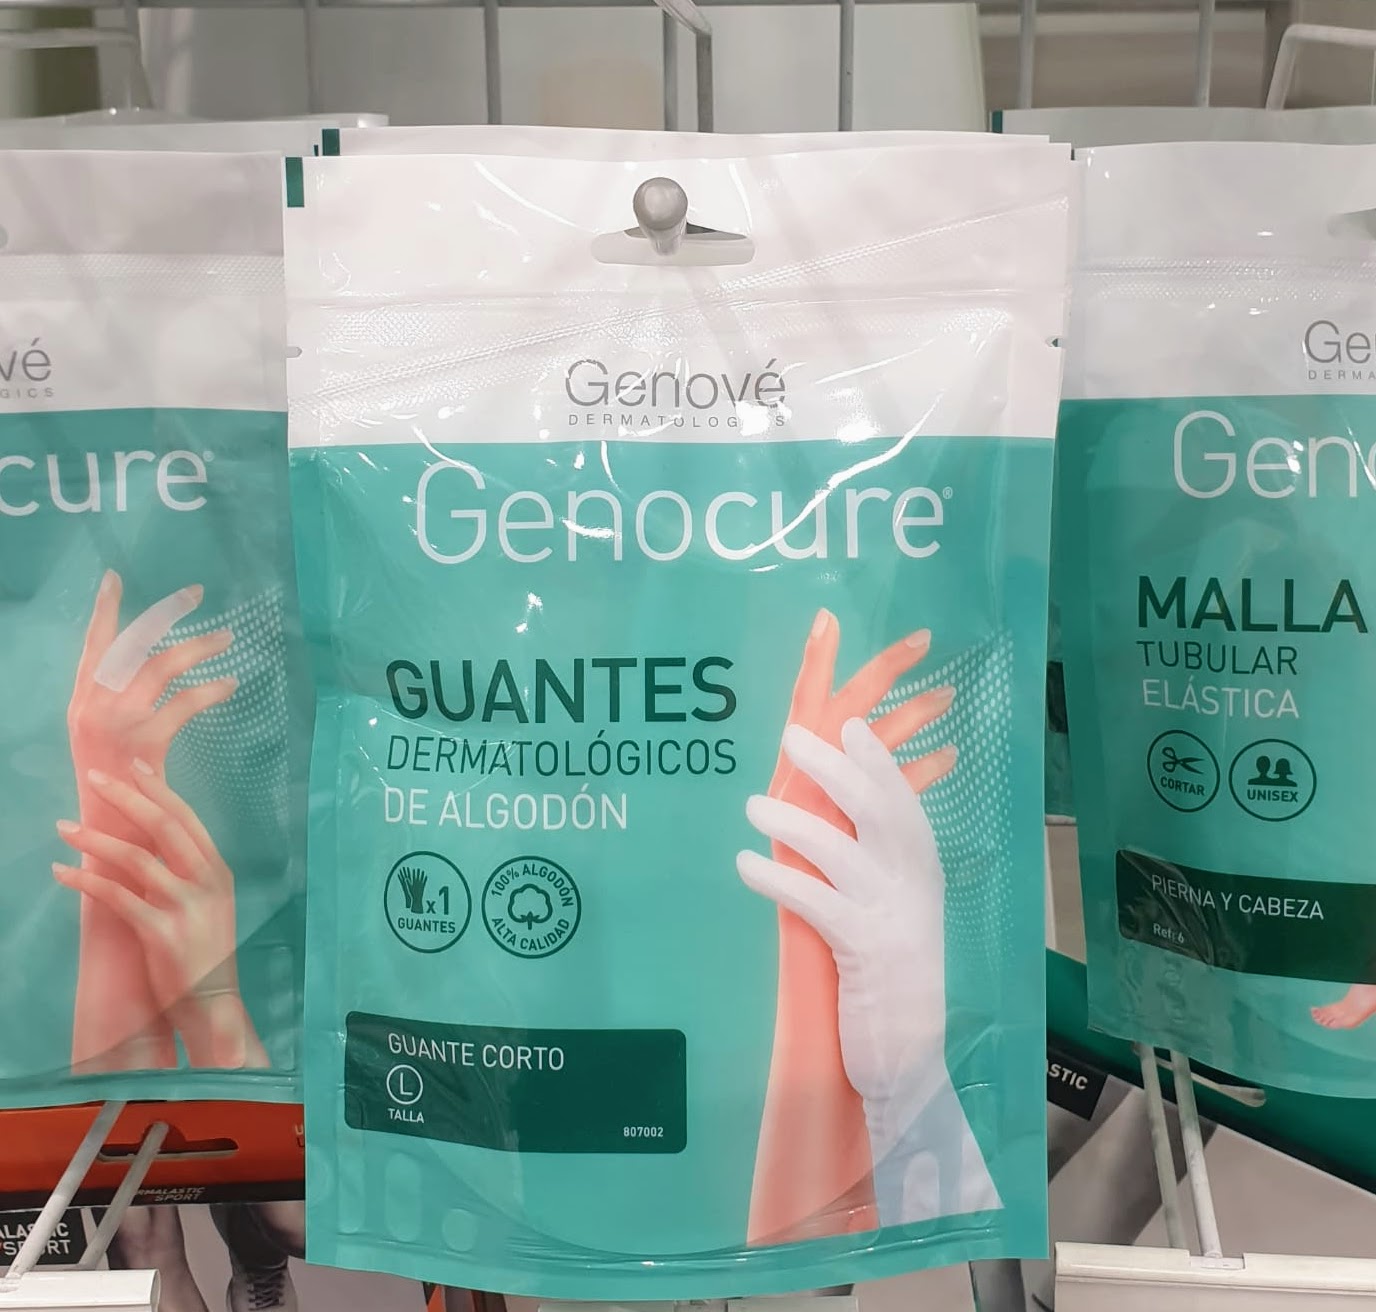 Genocure® Guantes Dermatológicos de Algodón son guantes 100 % de algodón que protegen de procesos alérgicos e irritativos y aseguran la acción eficaz de las cremas